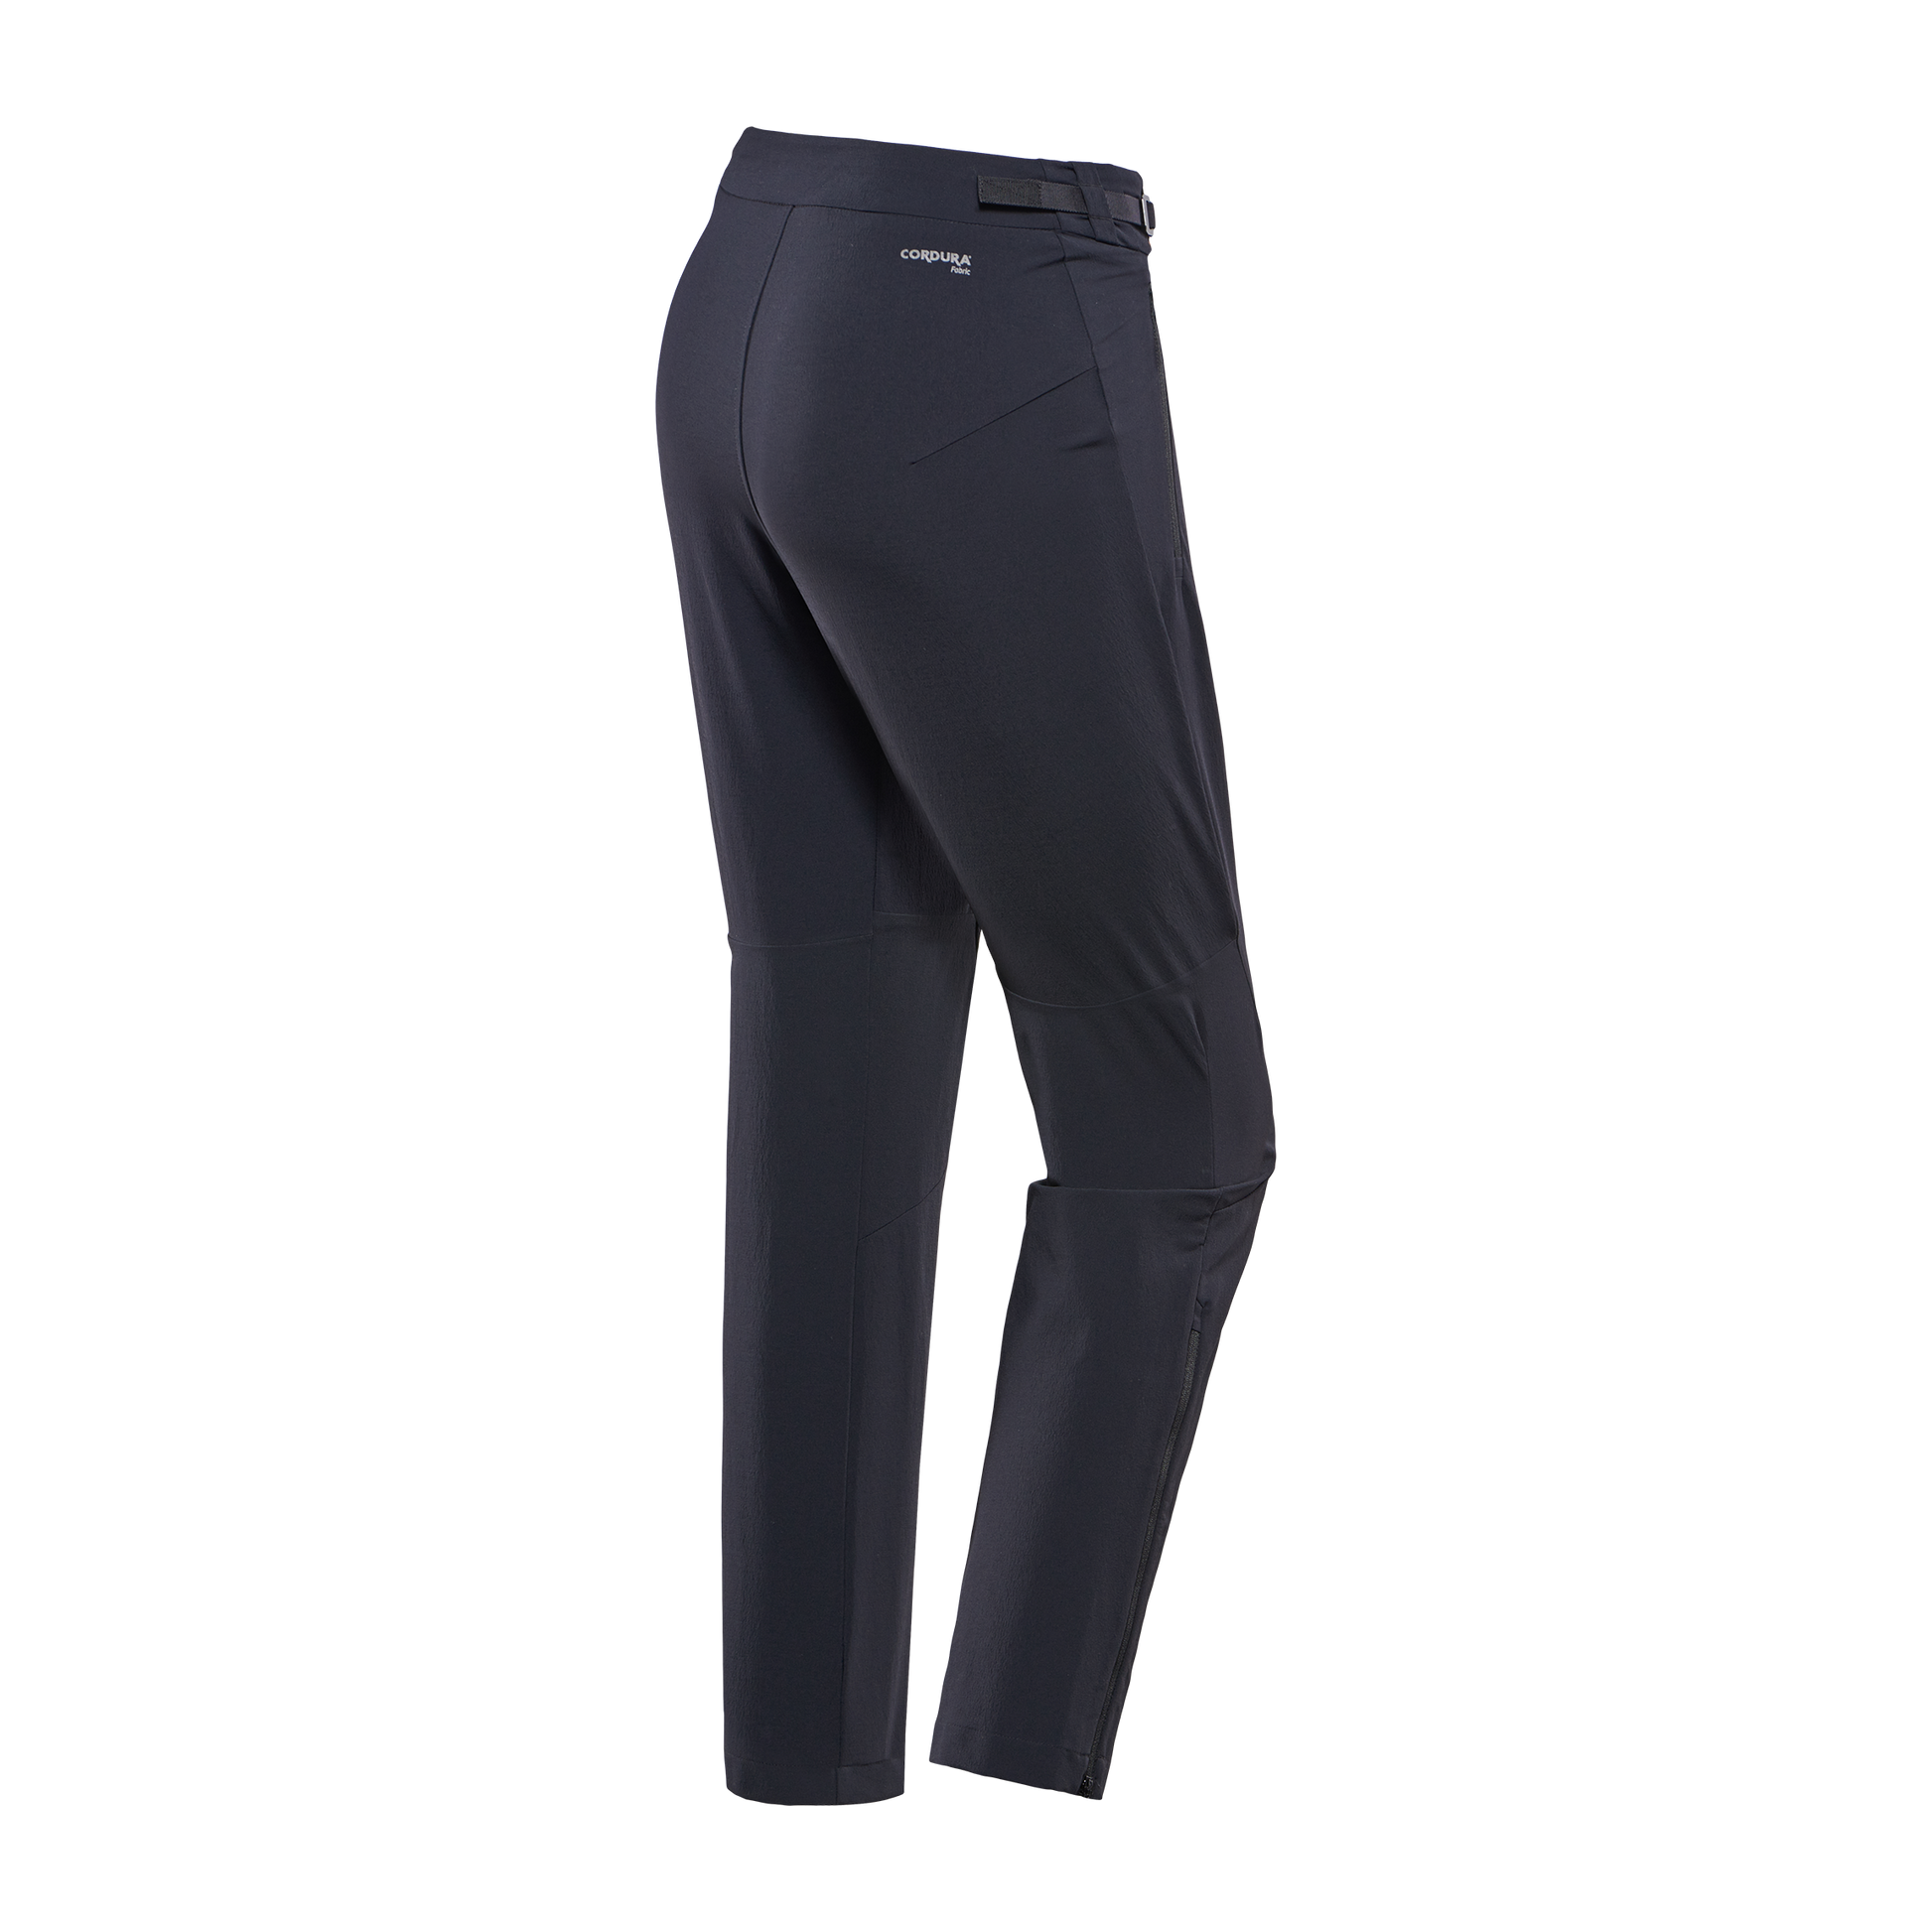 Buy Nike Pro 3in Shorts Women Olive, Black online